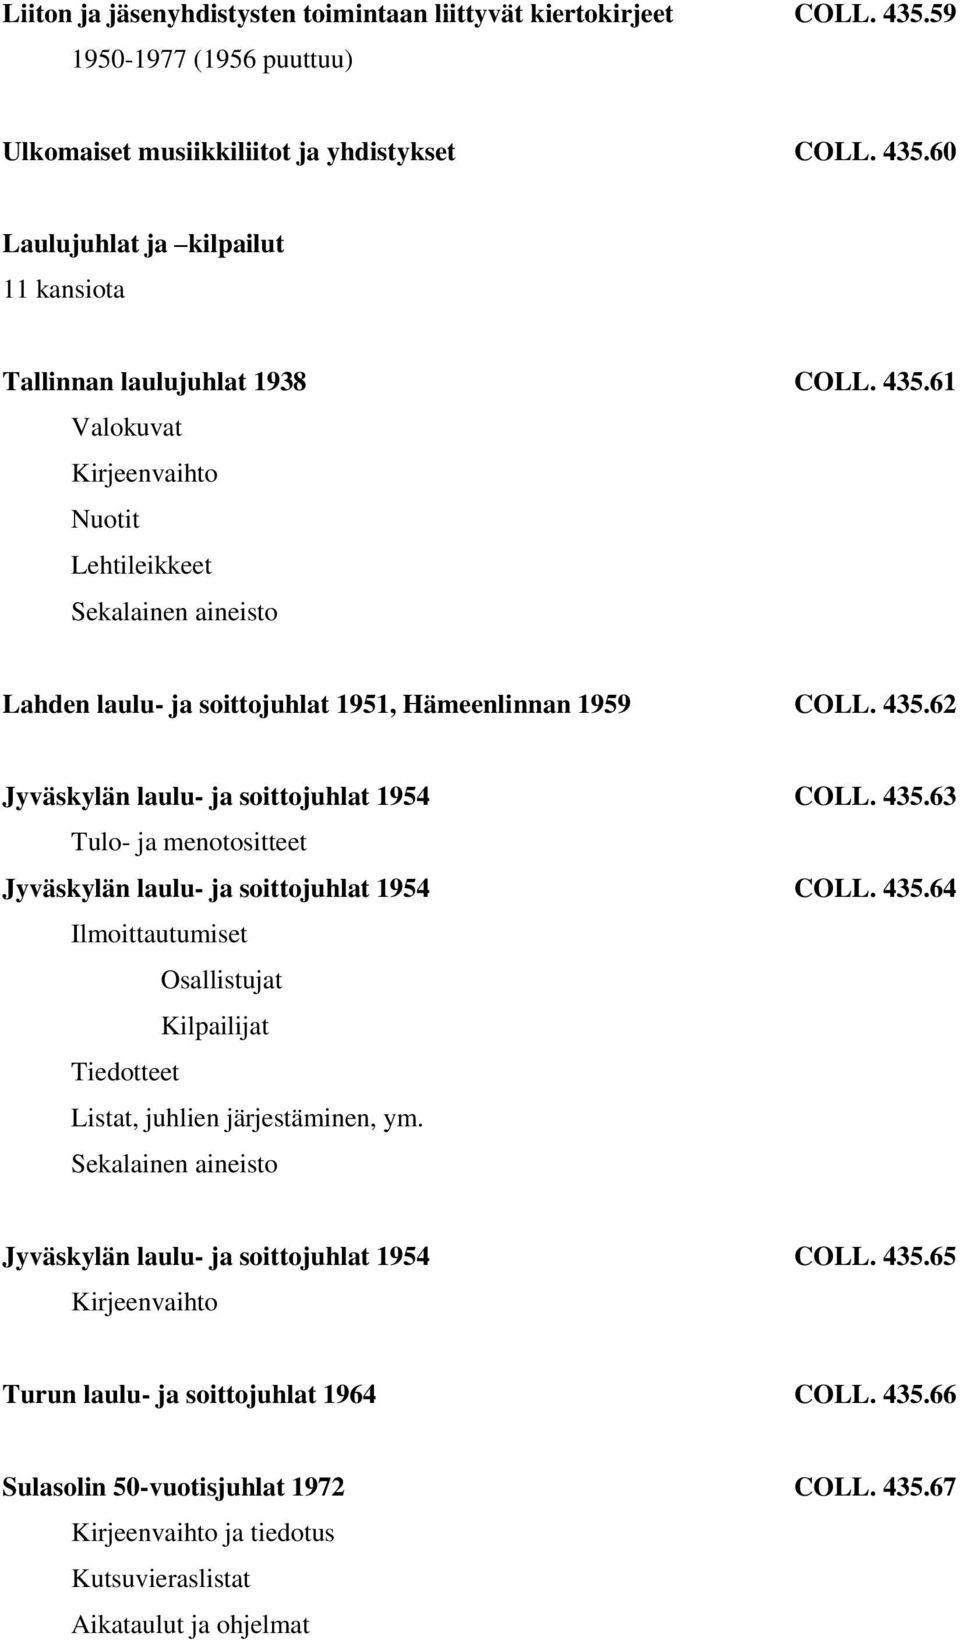 435.64 Ilmoittautumiset Osallistujat Kilpailijat Tiedotteet Listat, juhlien järjestäminen, ym. Jyväskylän laulu- ja soittojuhlat 1954 COLL. 435.